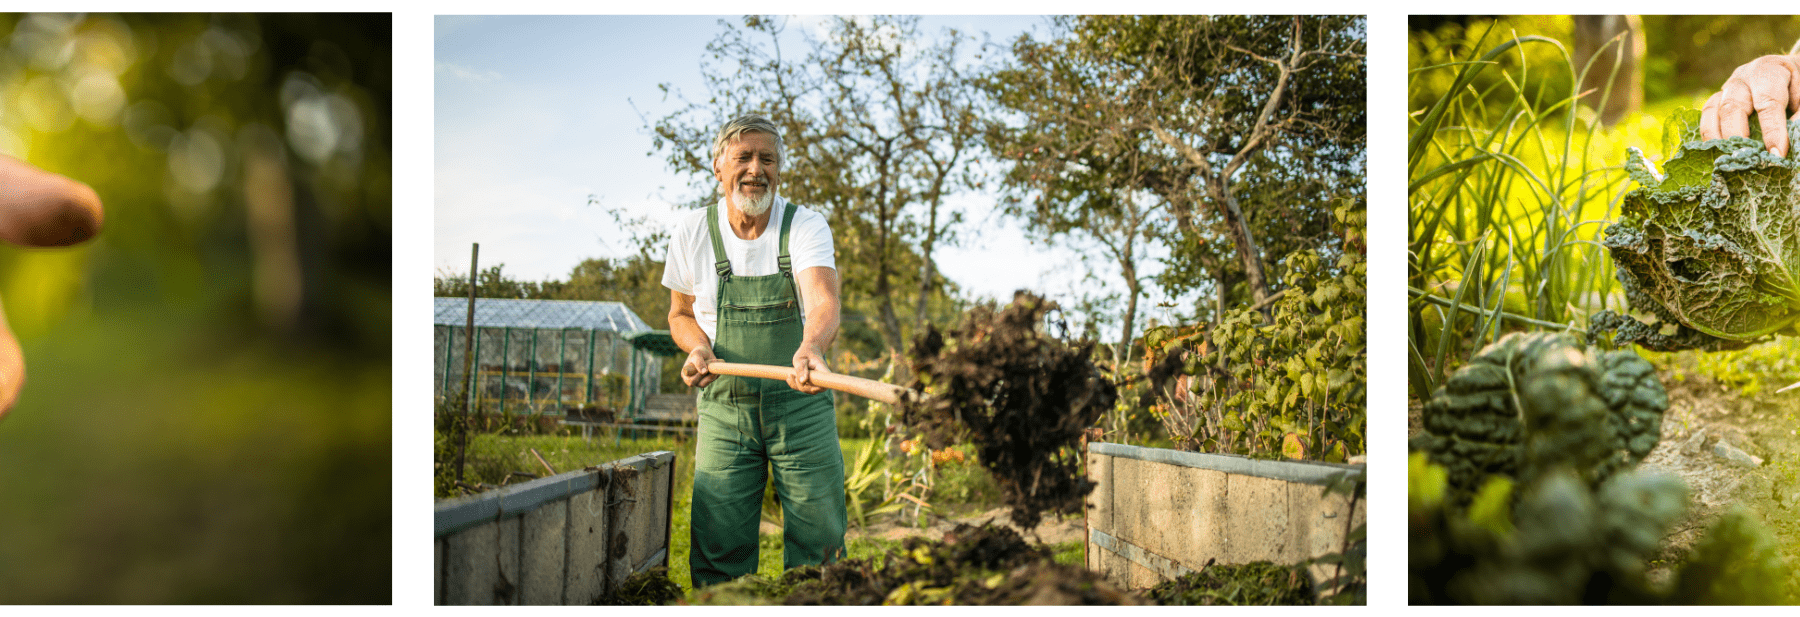 גבר עם כלי גינון עוסק בגינון בגינה